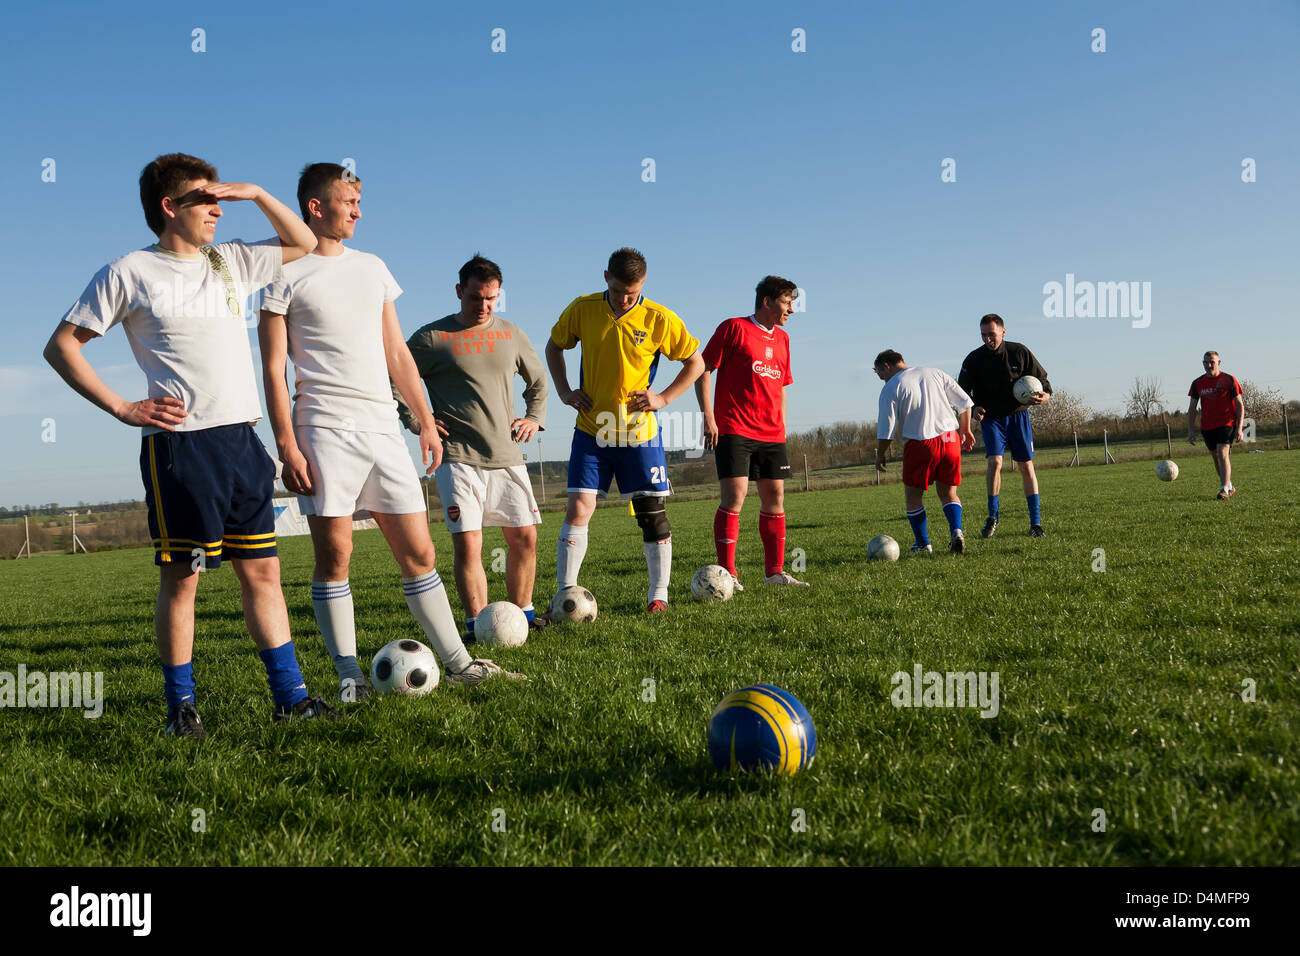 Skarpa, Polonia, los jóvenes de un club de fútbol en un pub Foto de stock